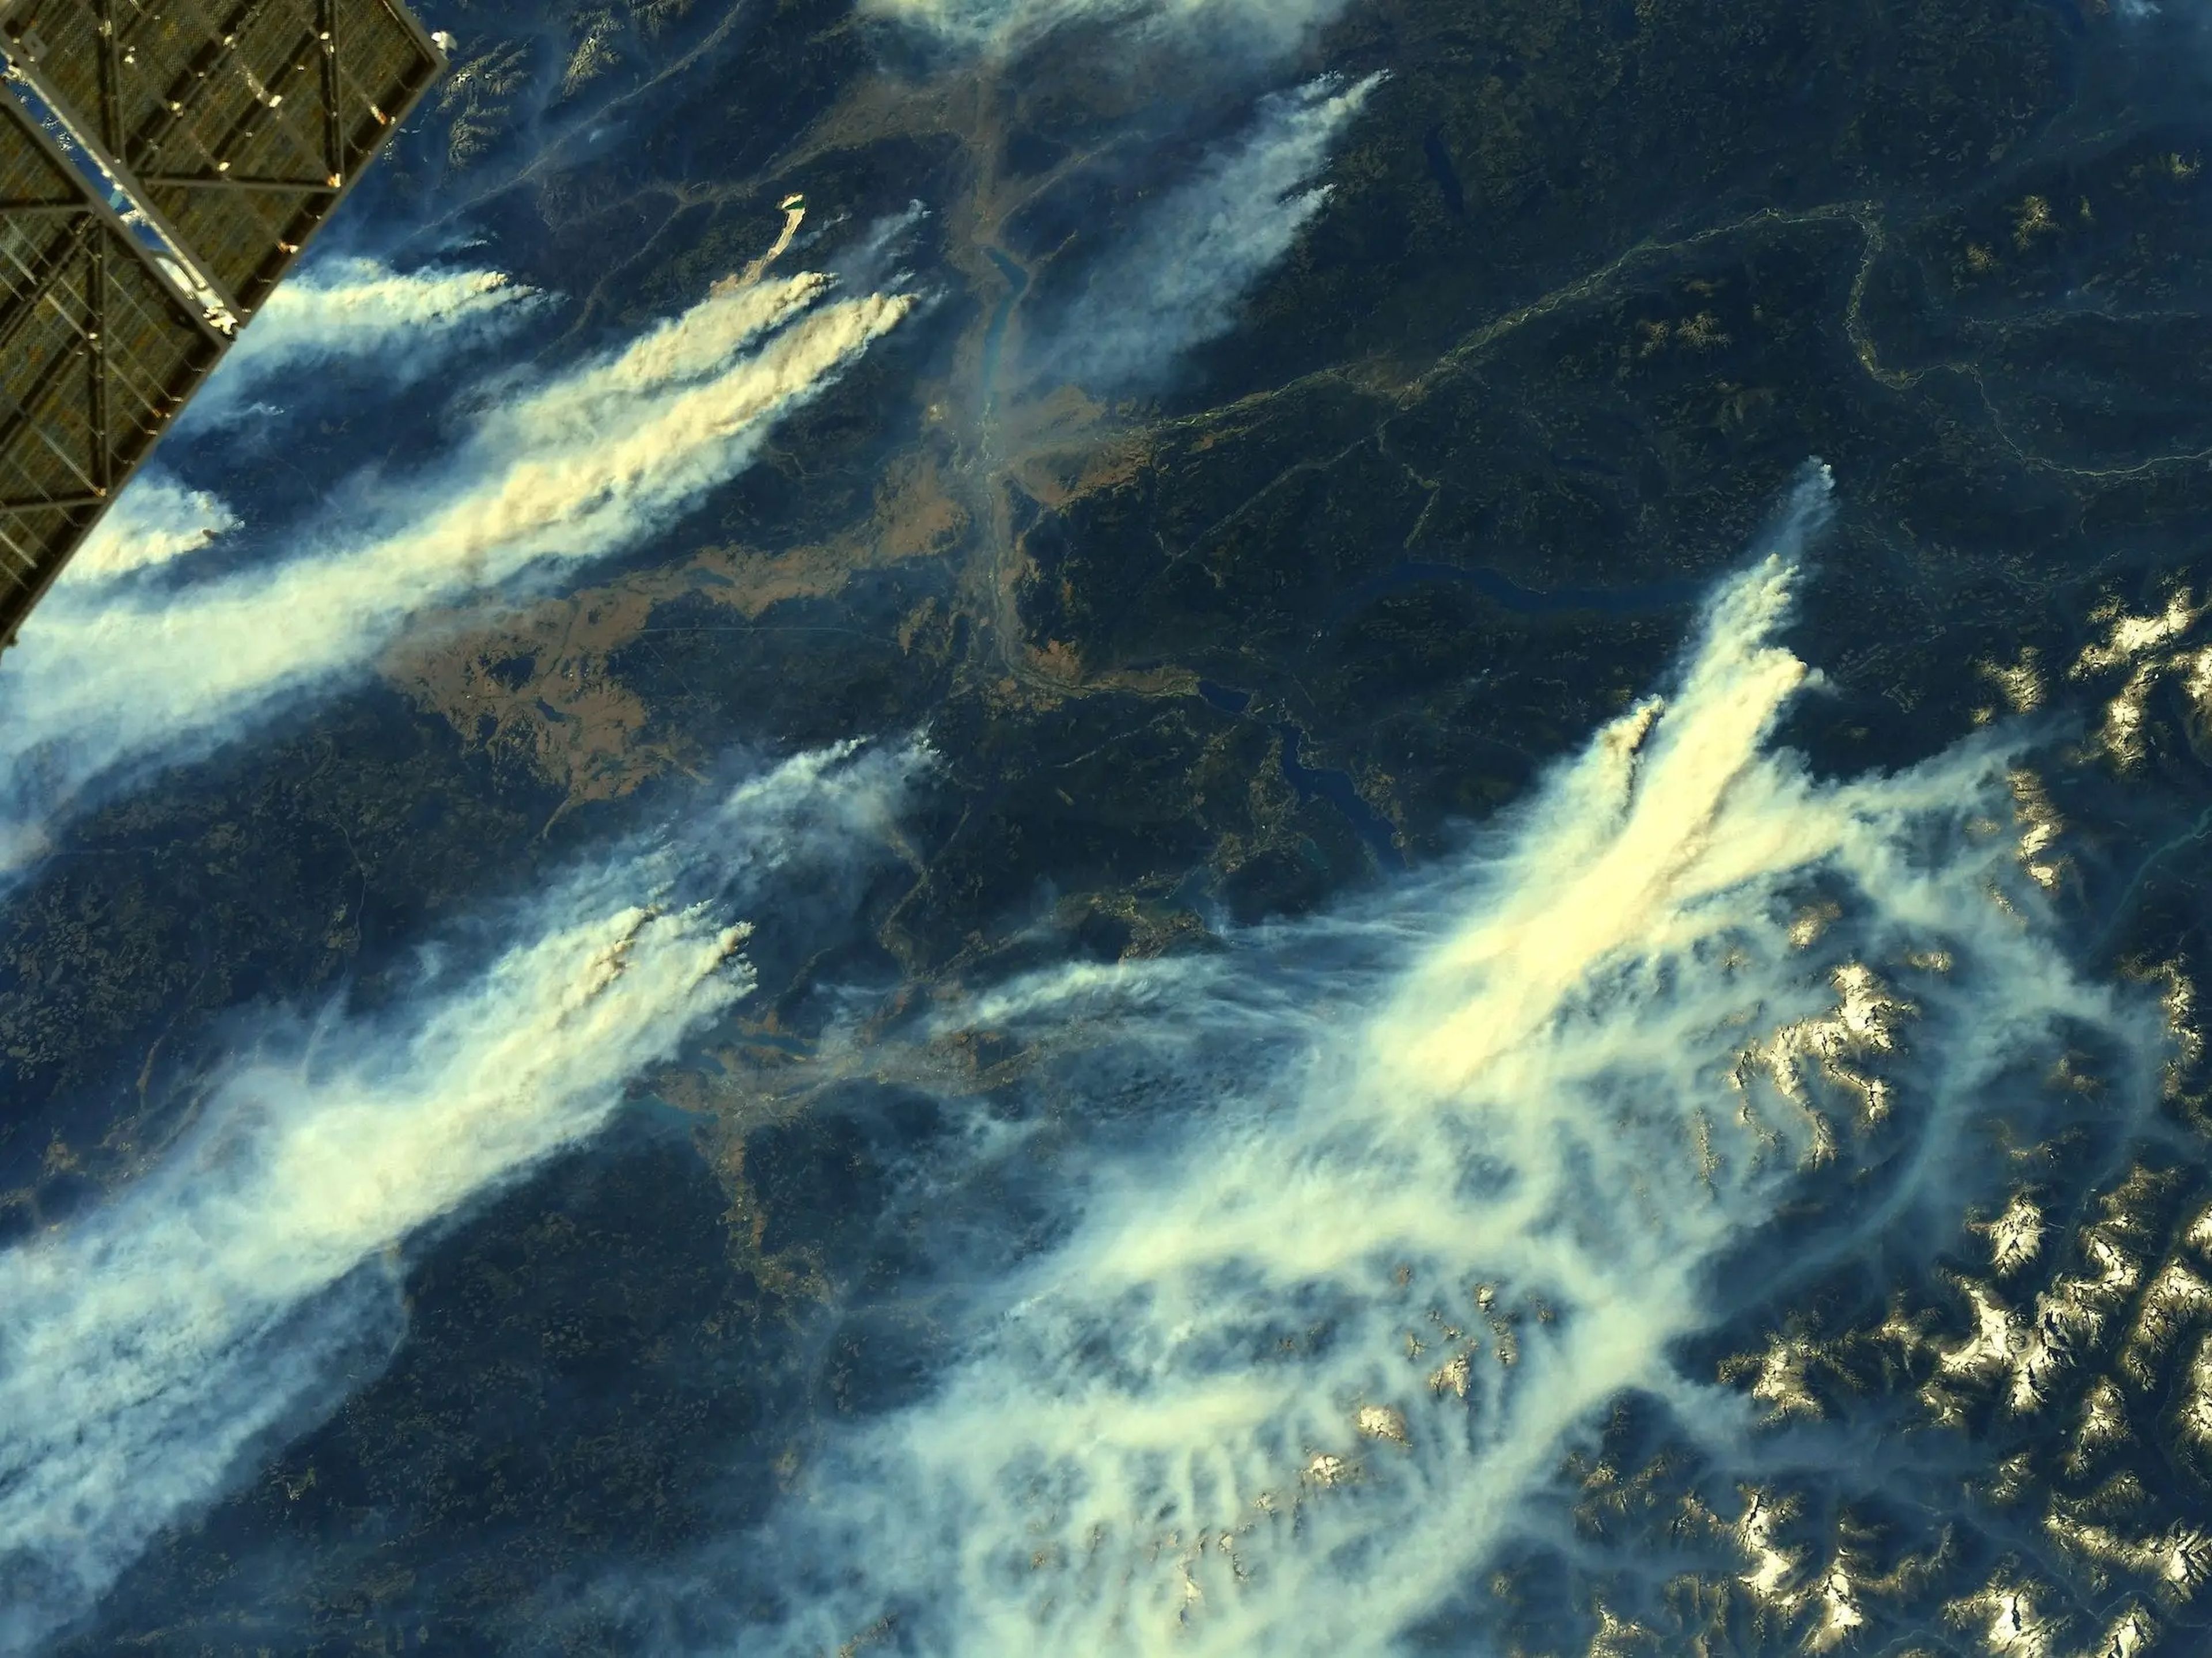 El humo de los incendios forestales se eleva desde los bosques en llamas en Canadá el 12 de agosto de 2021.